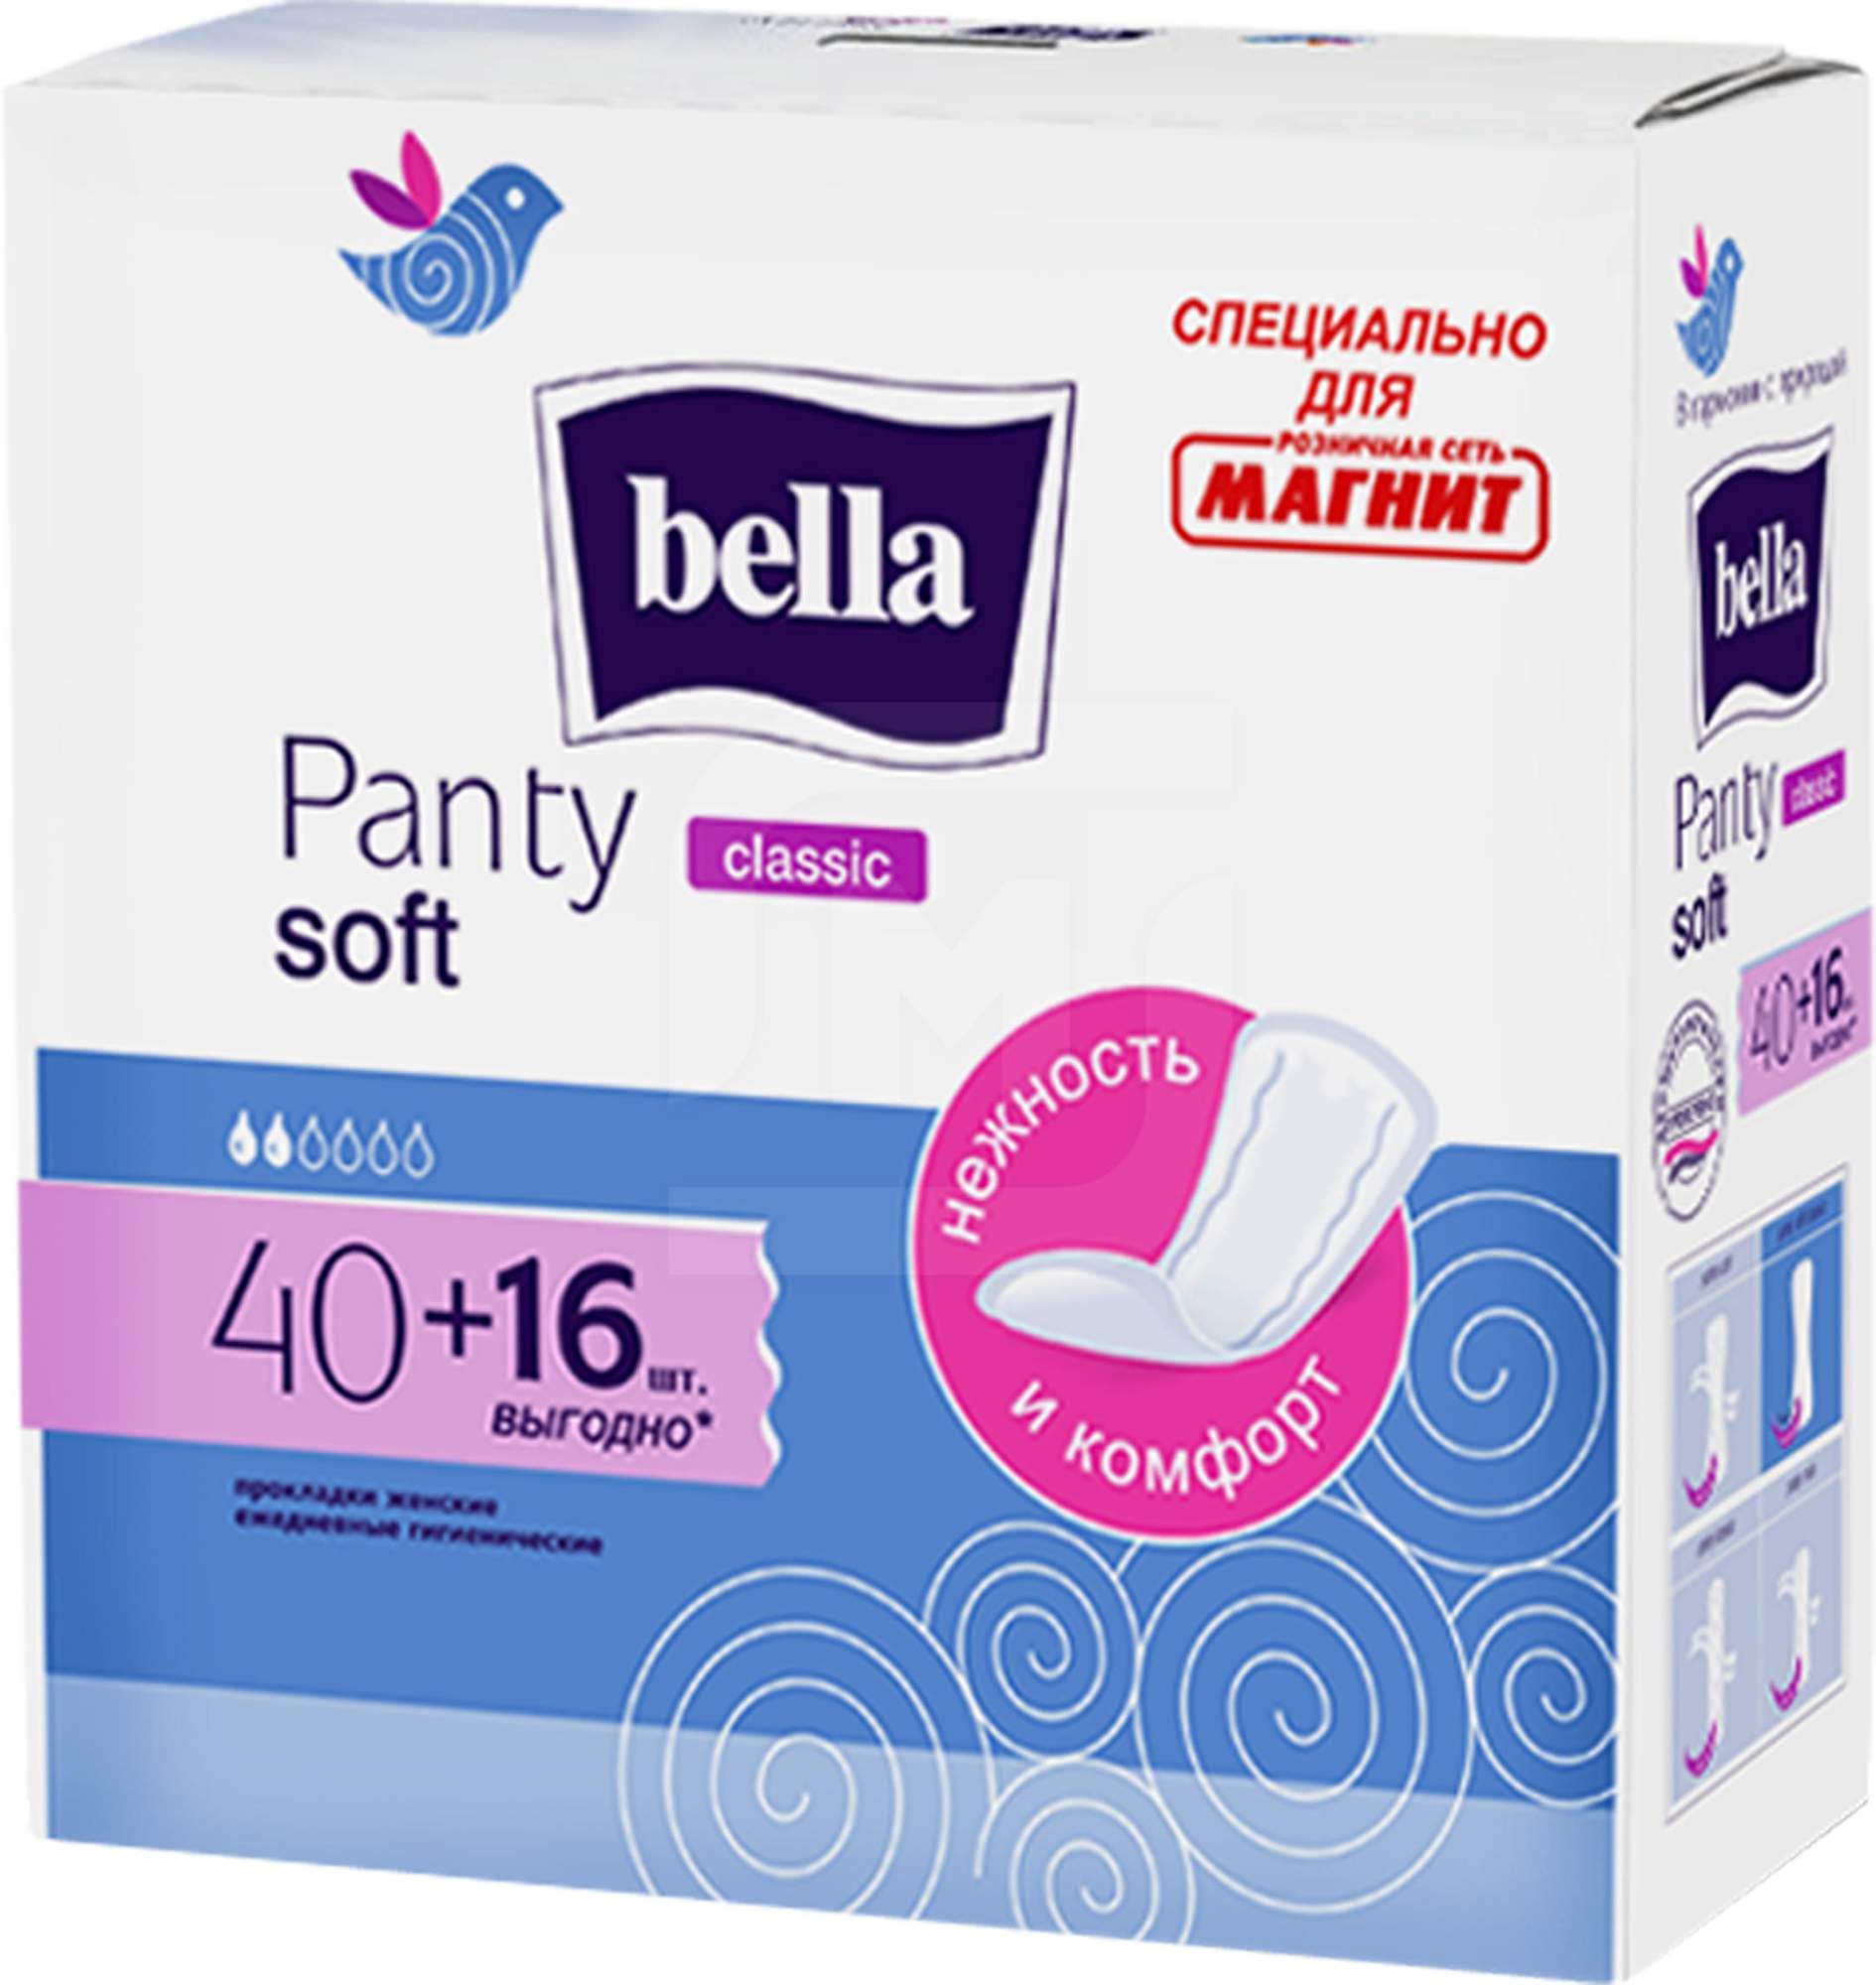 Прокладки Bella Panty Soft Classic ежедневные 40 +16 шт